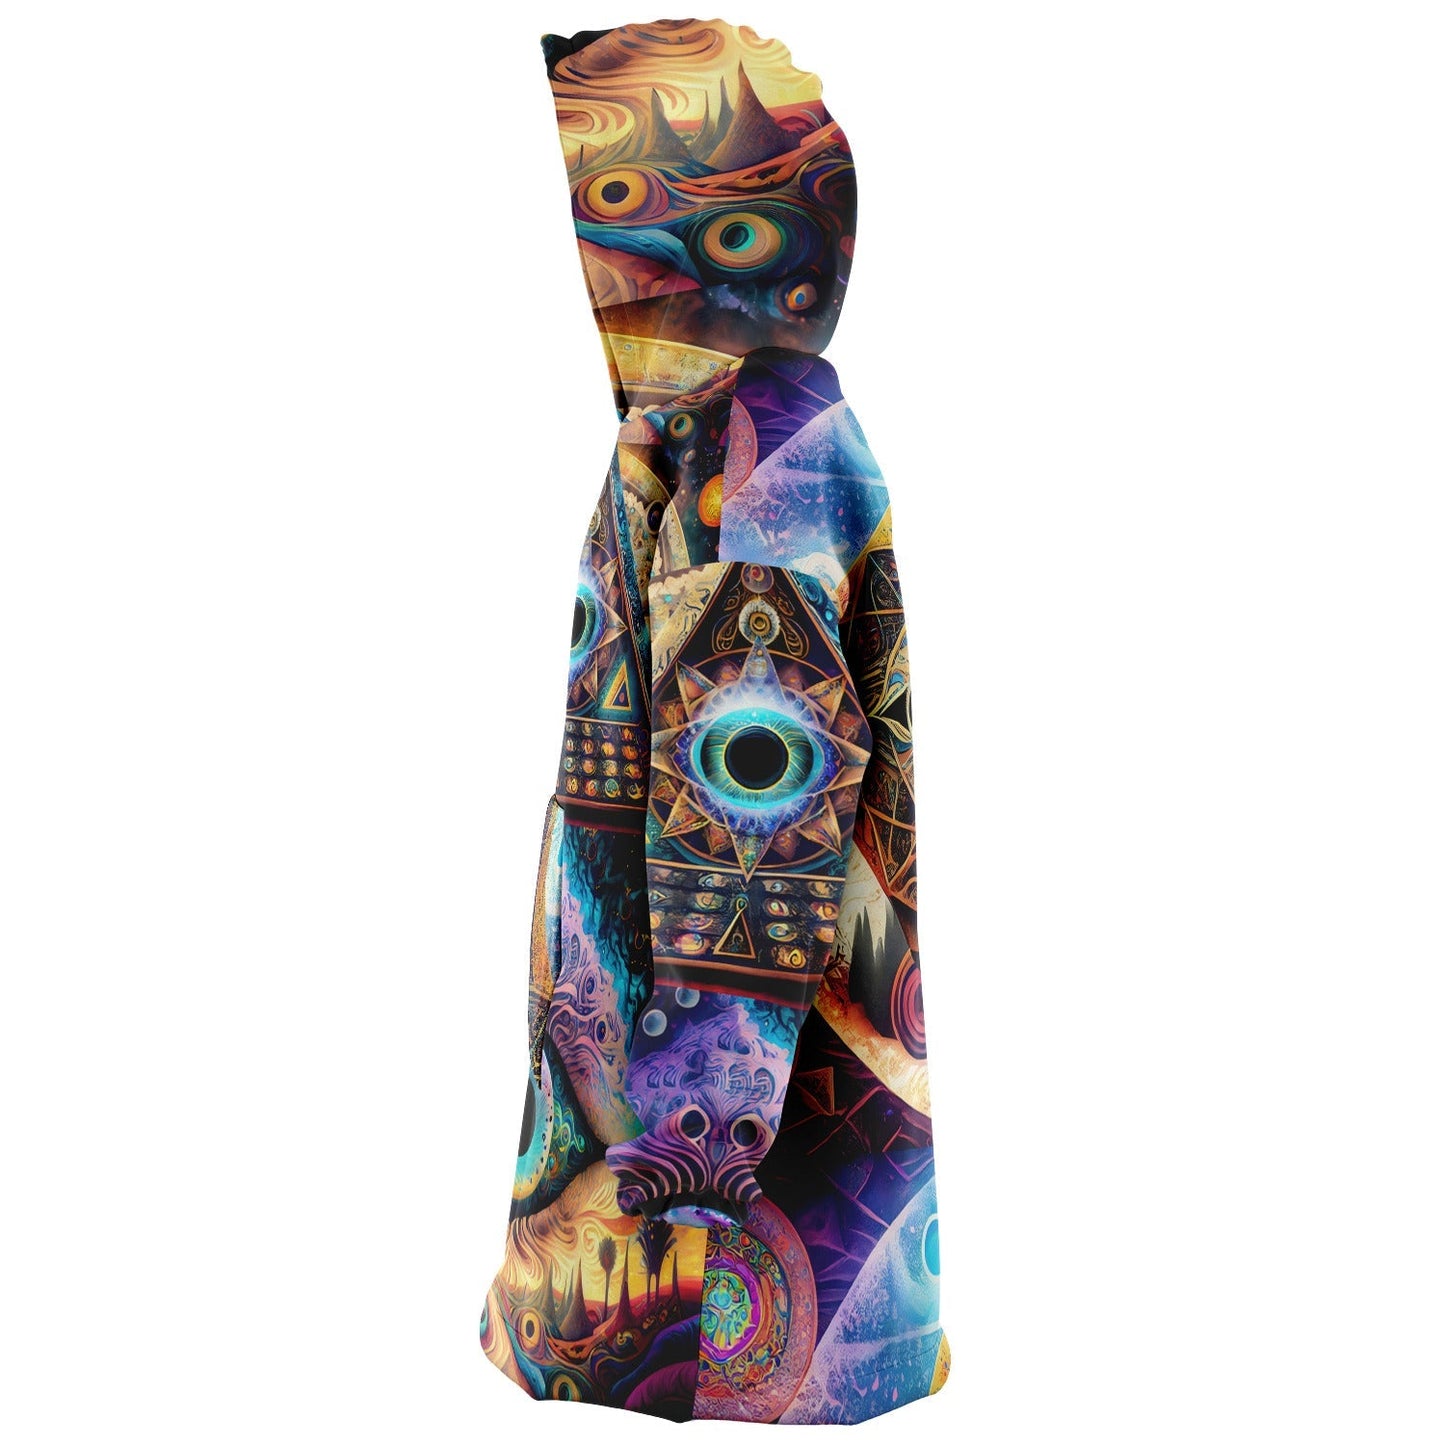 Trippy Art Underground Rave Aesthetic Cosmic Eye Snug Hoodie HOO-DESIGN.SHOP